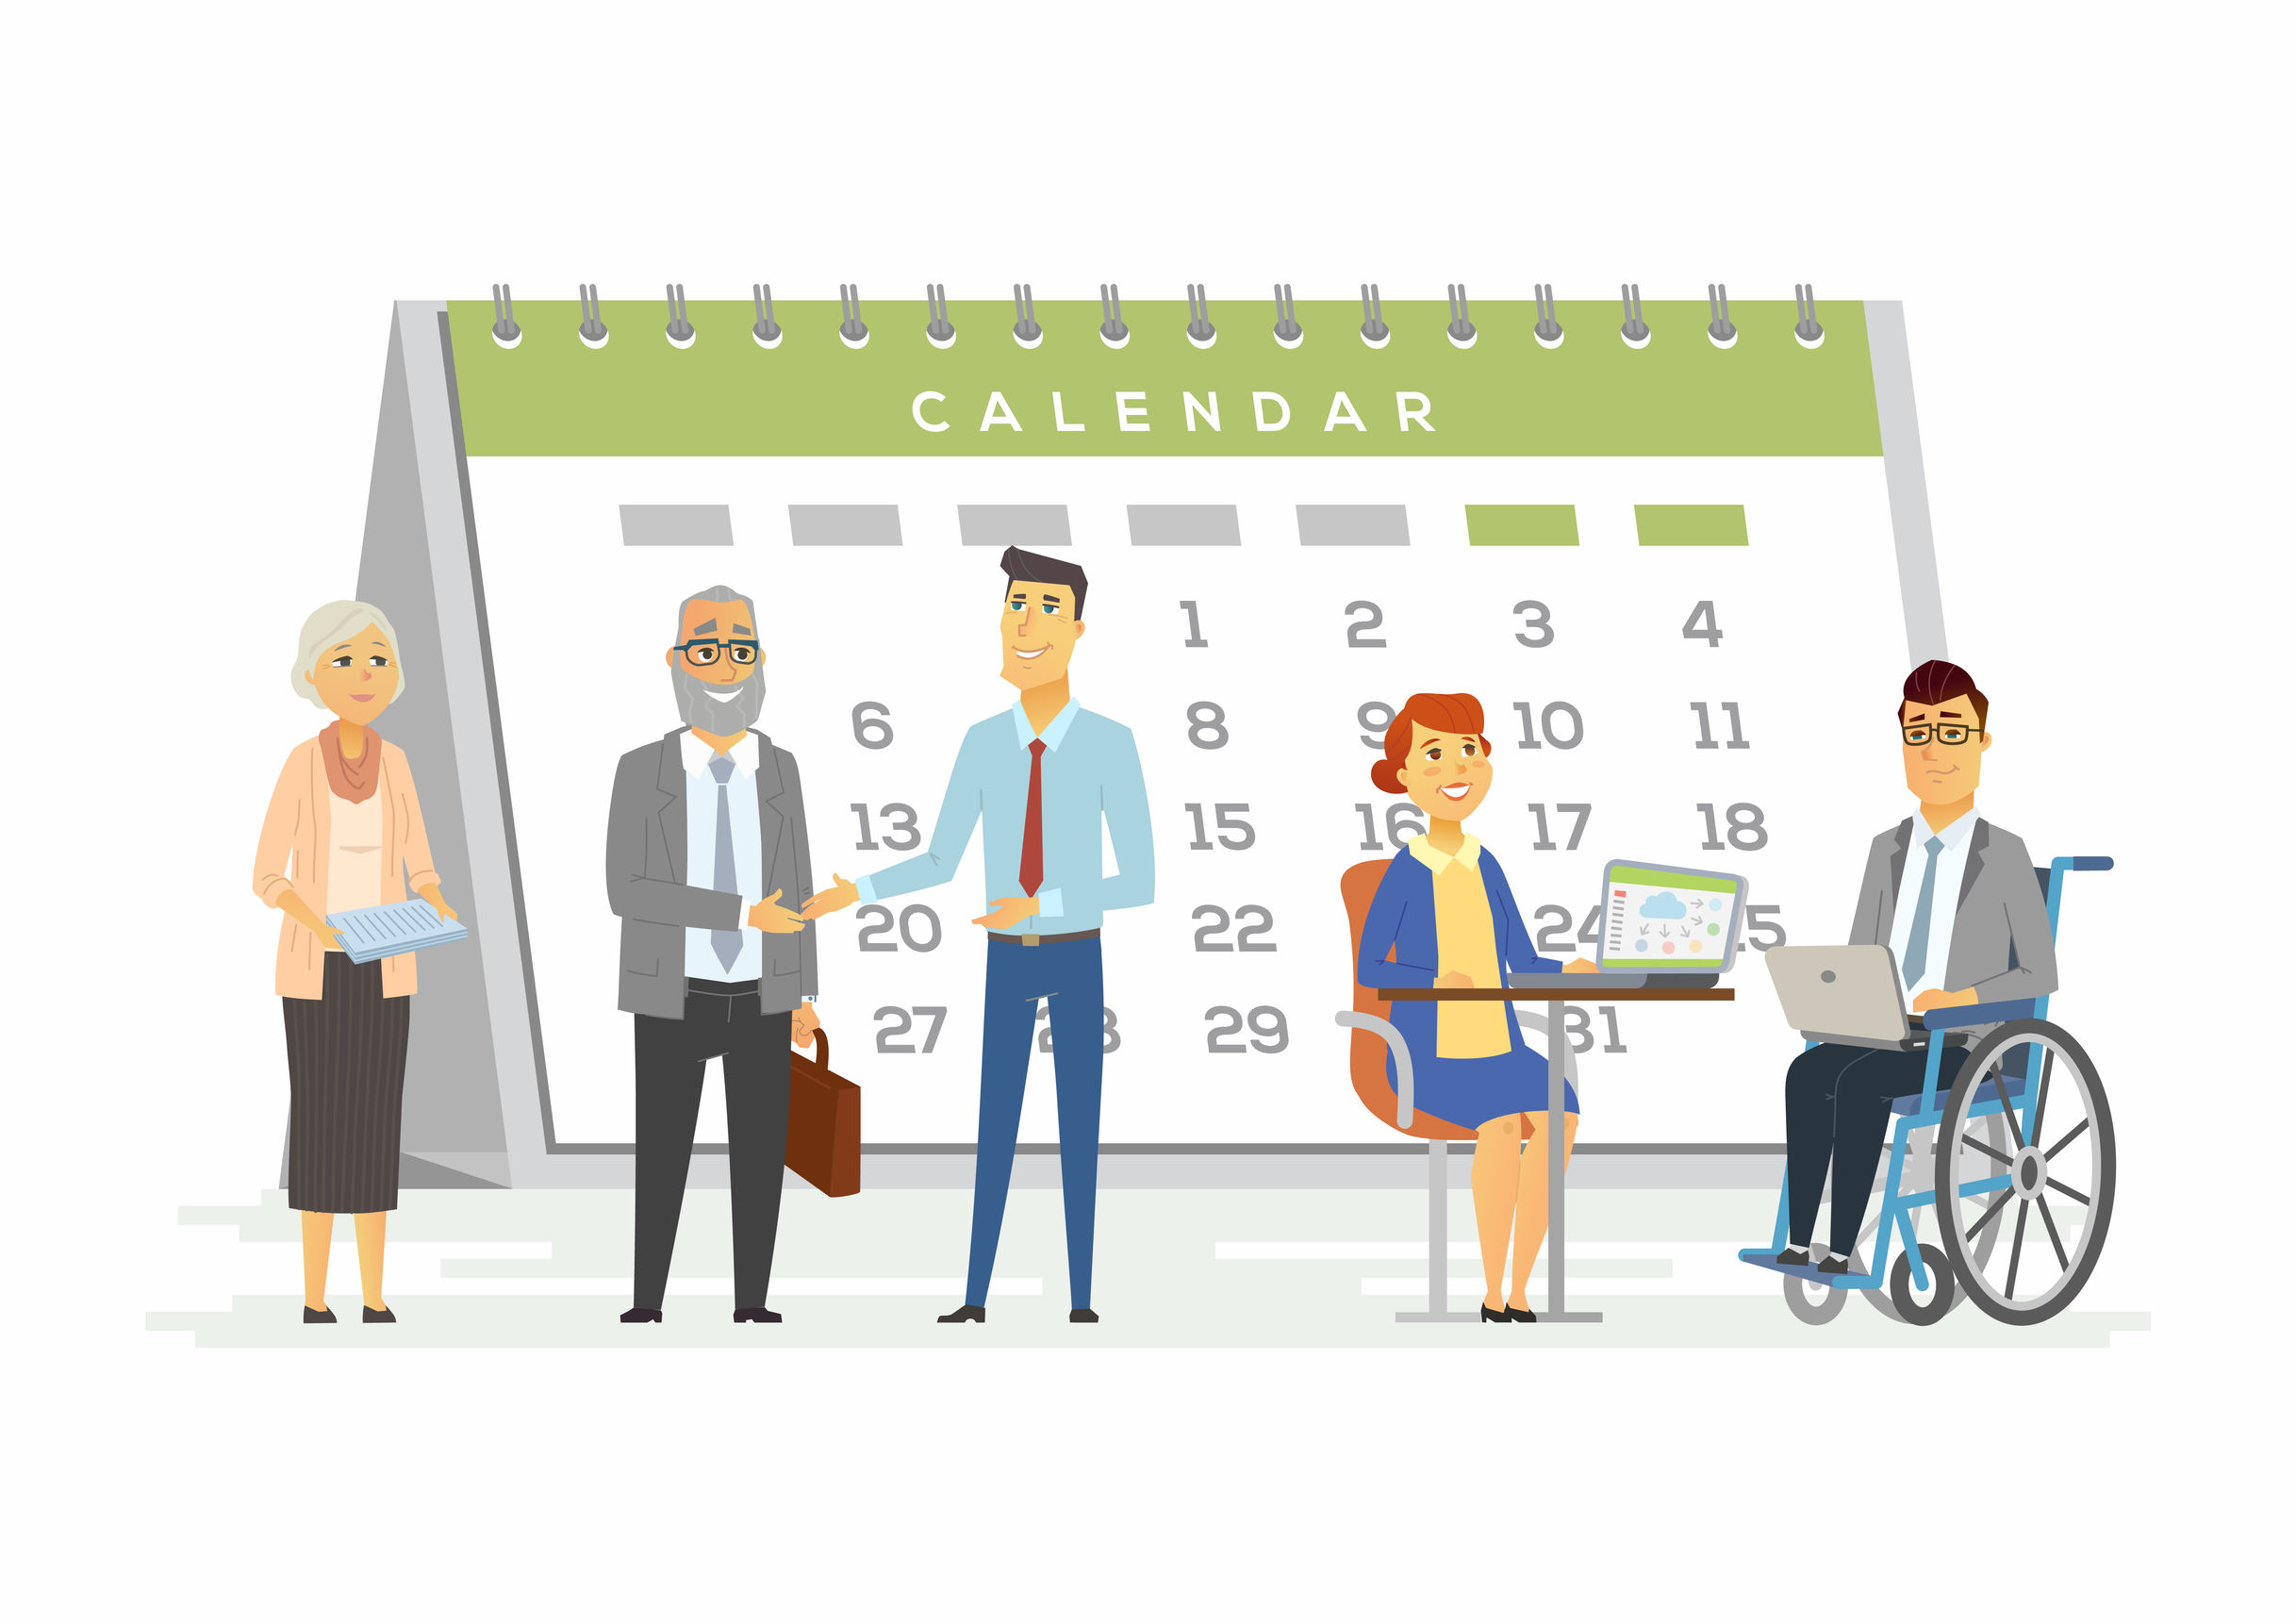 圖片中有一個放大了的座檯月曆，前面是一班僱員的圖像，包括一位輪椅使用者。